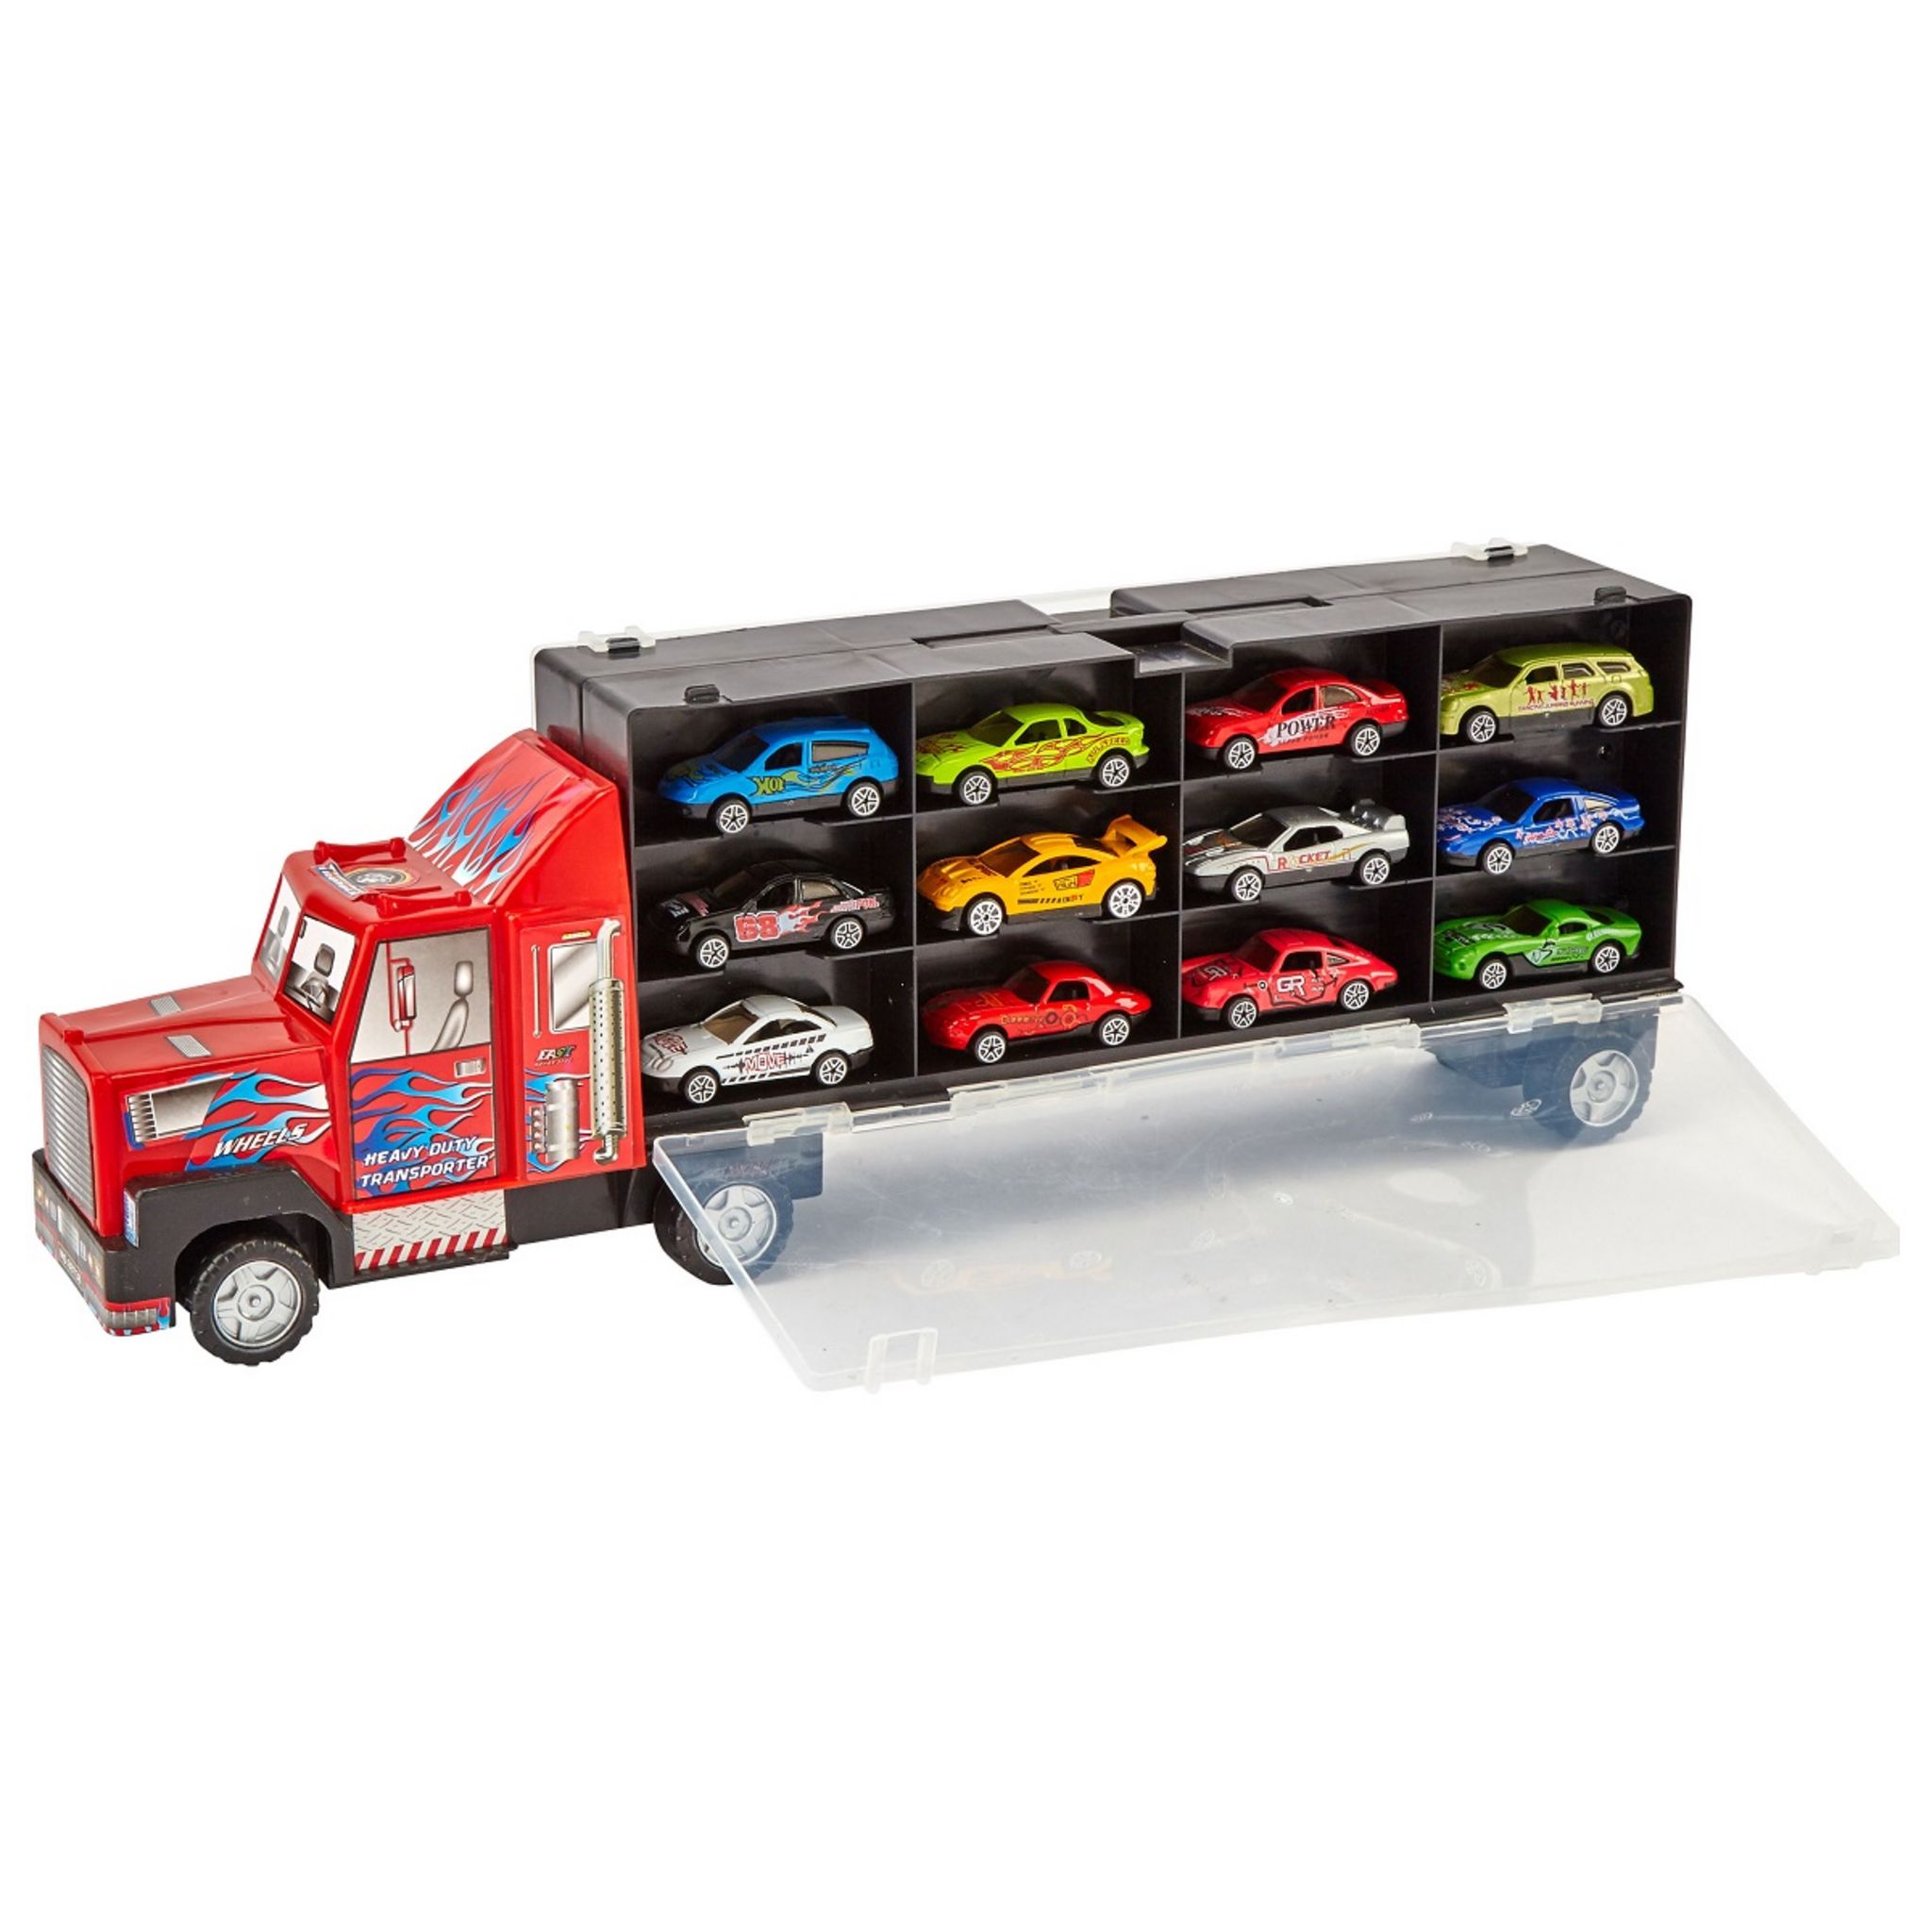 Un camion de livraison de voiture jouet 